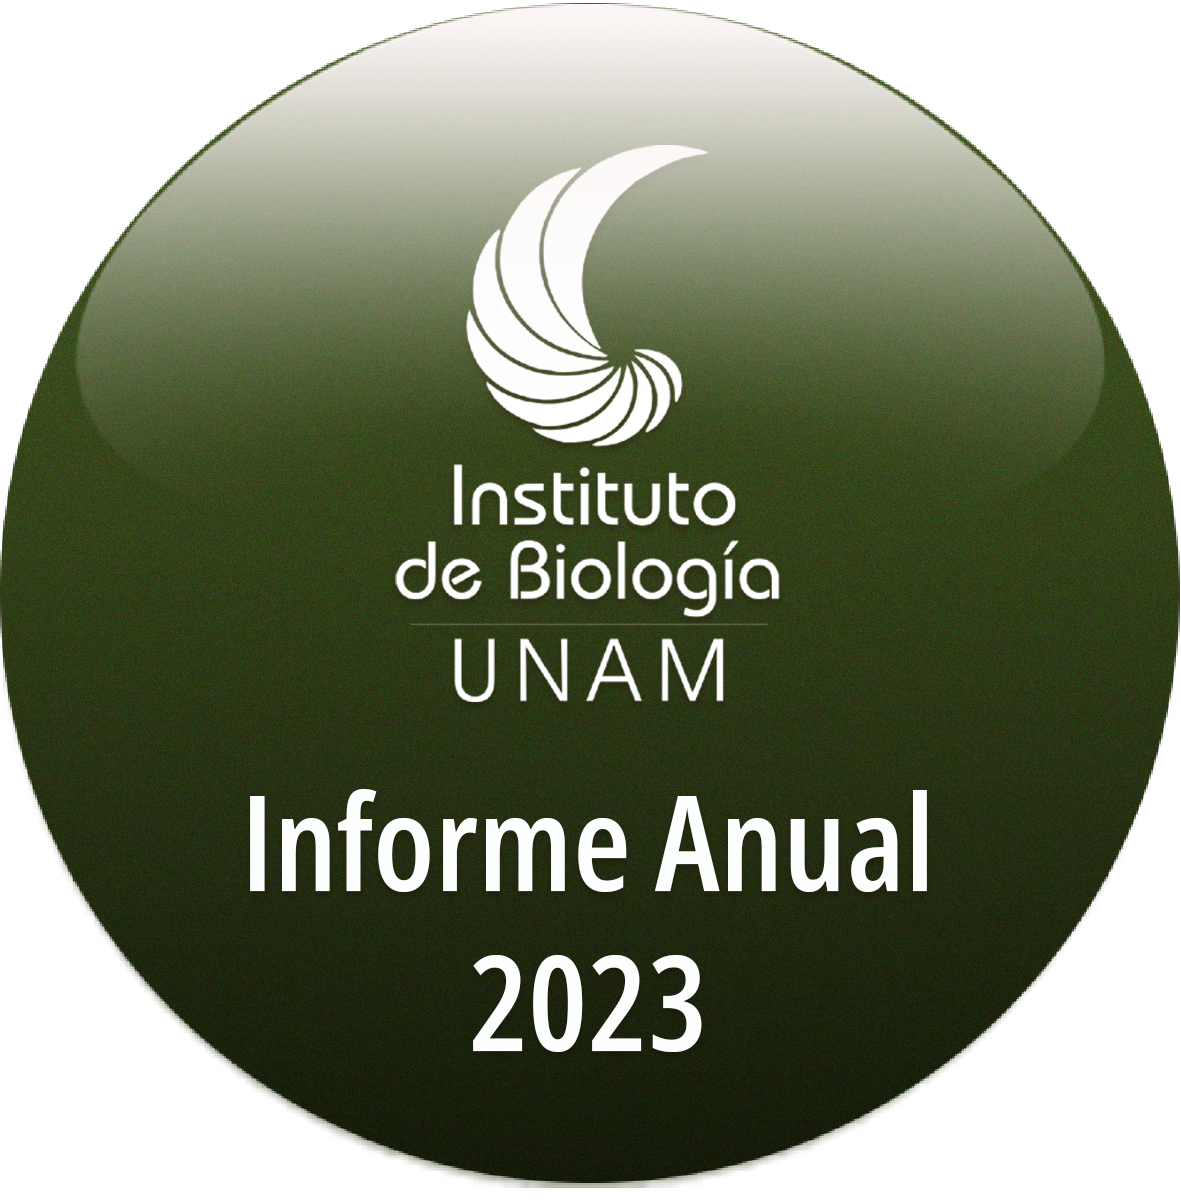  Informe Anual 2023 - Instituto de Biología, UNAM